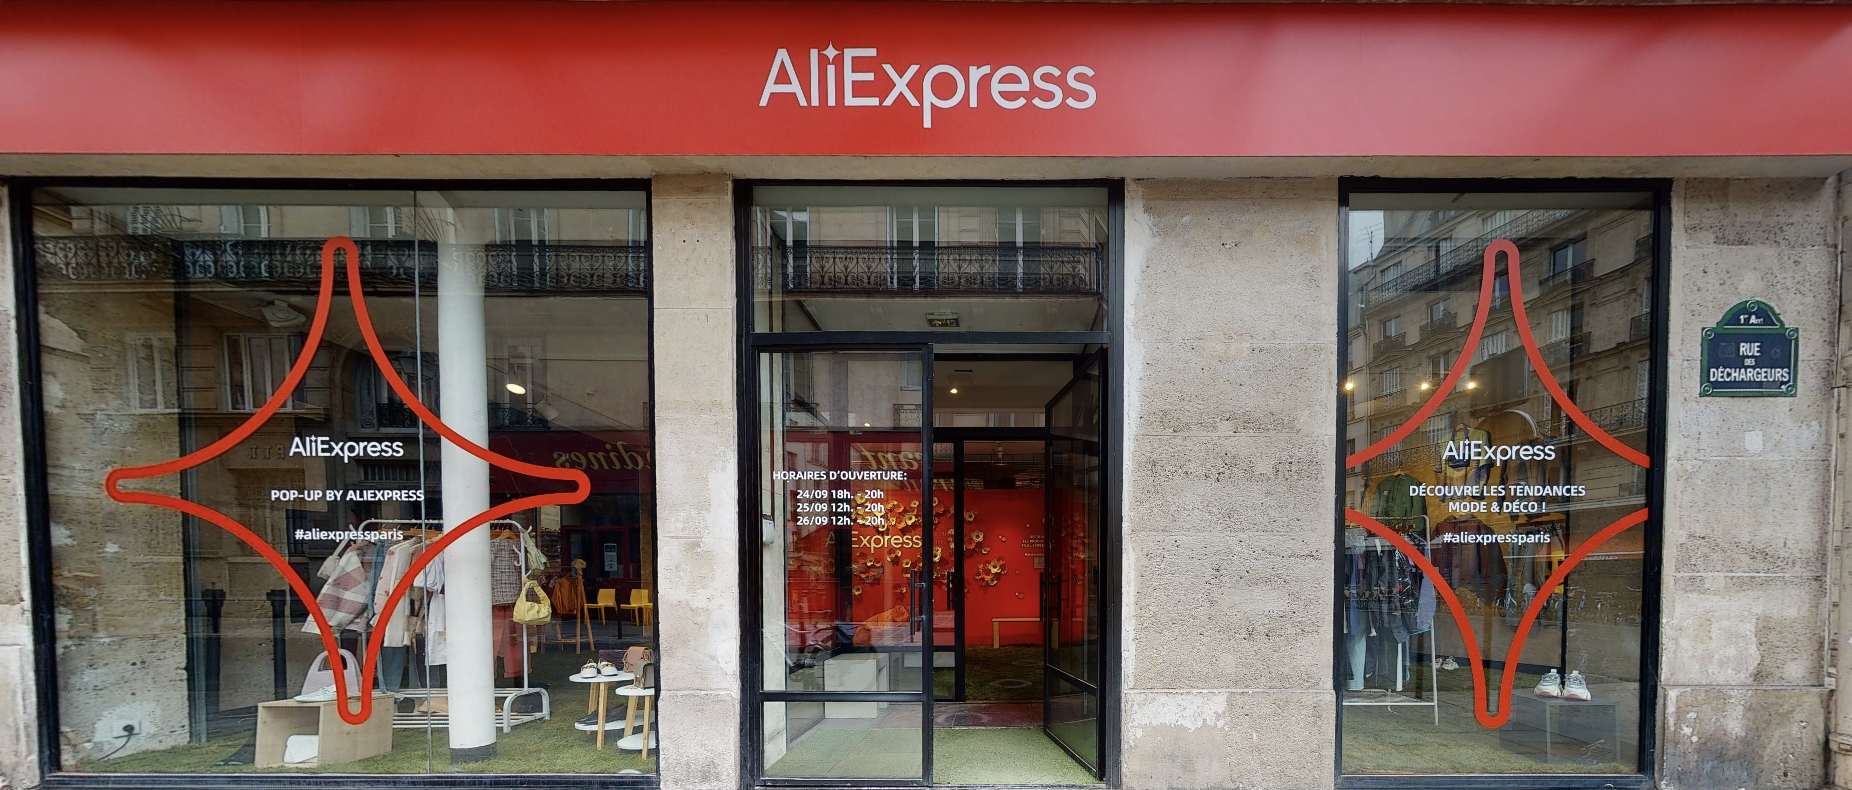 AliExpress (groupe Alibaba) ouvre une boutique éphémère à Paris